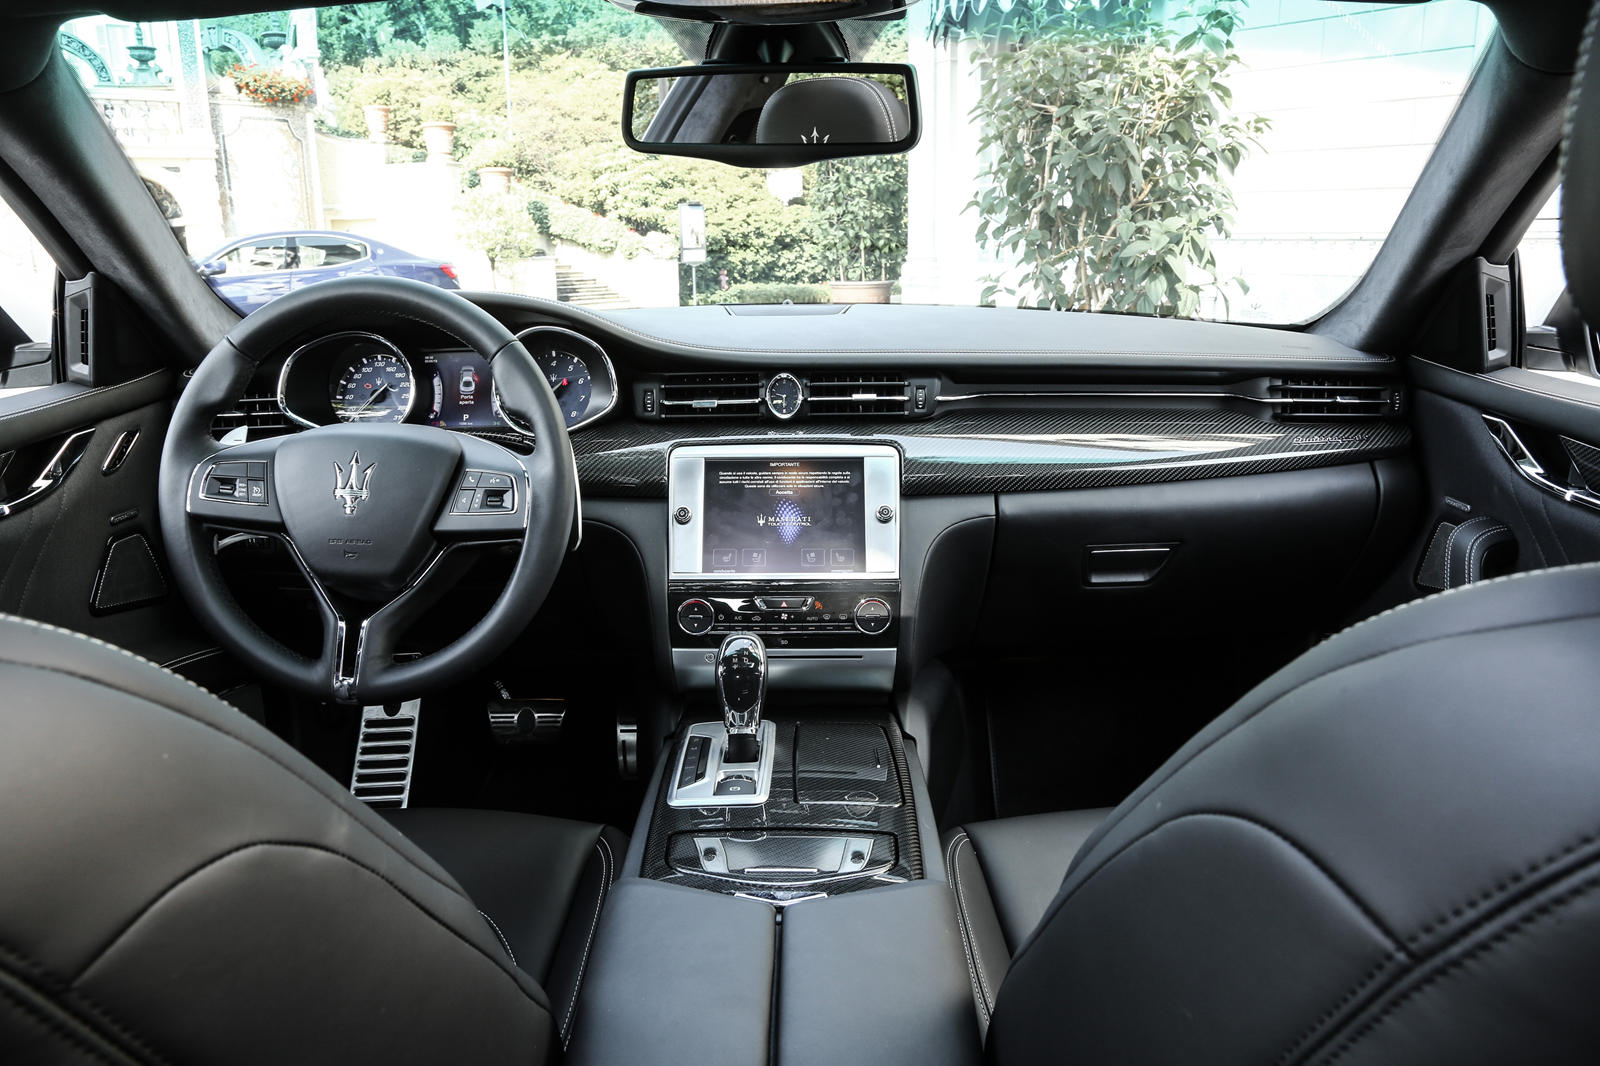 2013 Maserati Quattroporte Dashboard